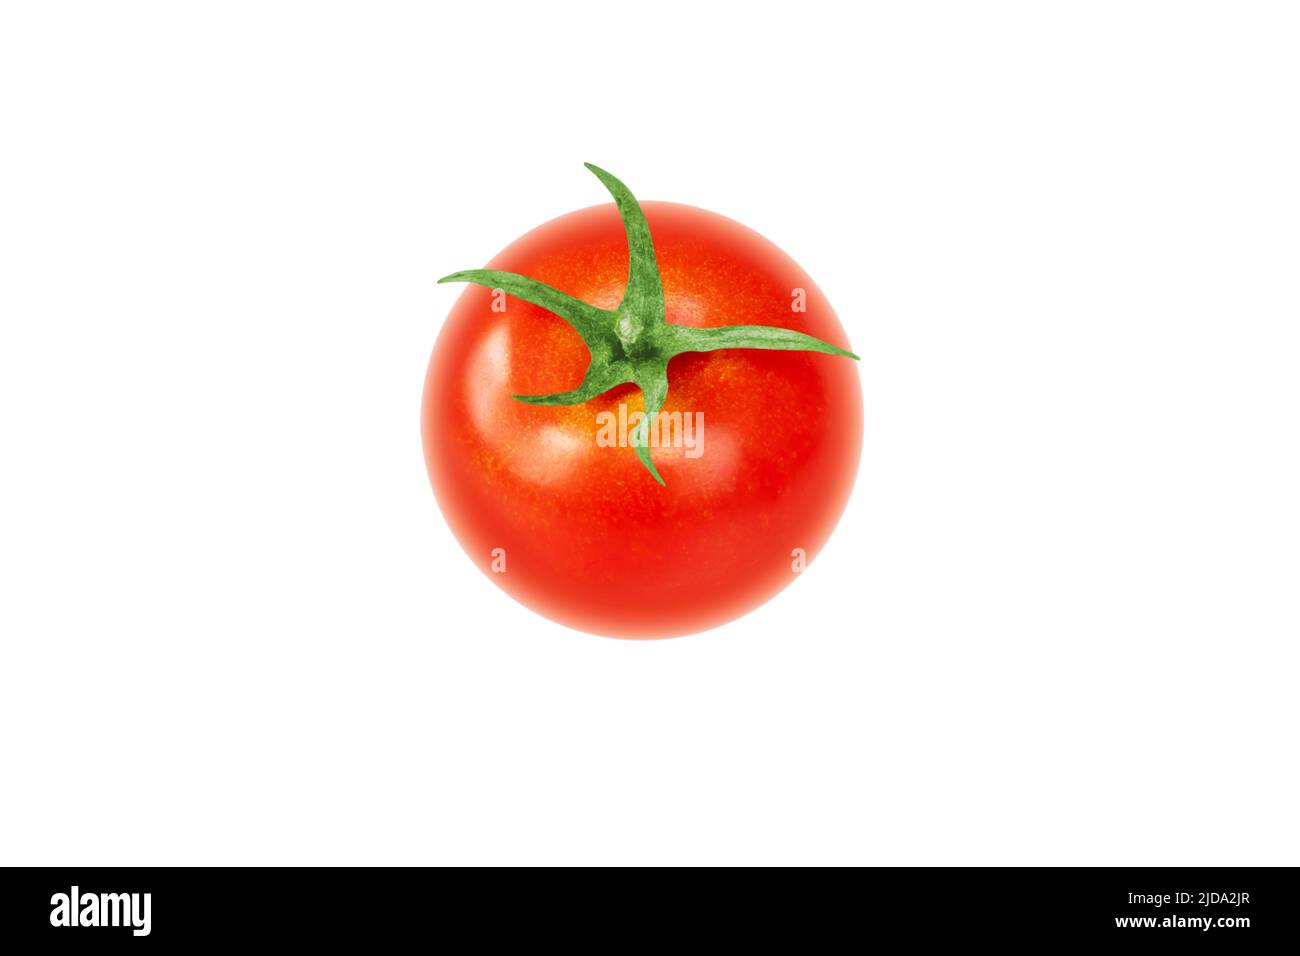 Légume entier de tomate rouge avec queue verte isolée sur blanc. Solanum lycopersicum fruits mûrs. Banque D'Images